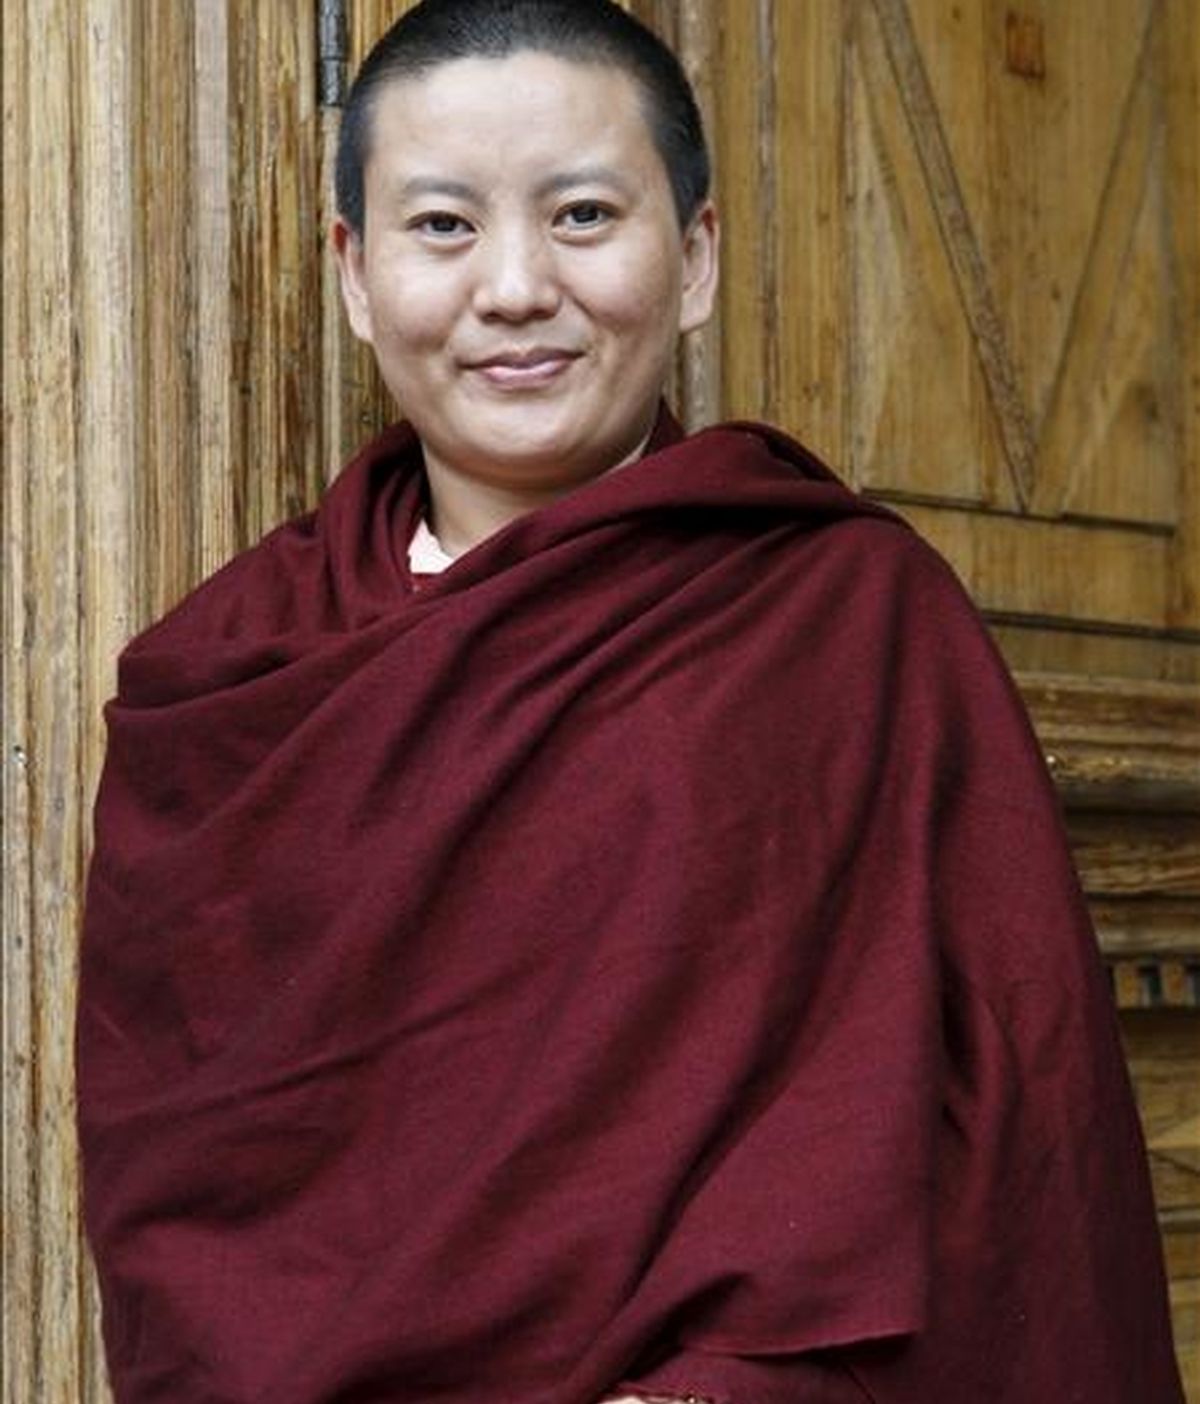 La cantante y monja budista Ani Choying Dolma, nepalí de origen tibetano, decidió a los diez años hacerse monja nepalí porque no quería casarse, pues ello equivalía a recibir de un marido las palizas que ya le había dado su padre. Hoy, cantante de éxito, ha desvelado su dura niñez en la autobiografía "La canción de la libertad". EFE